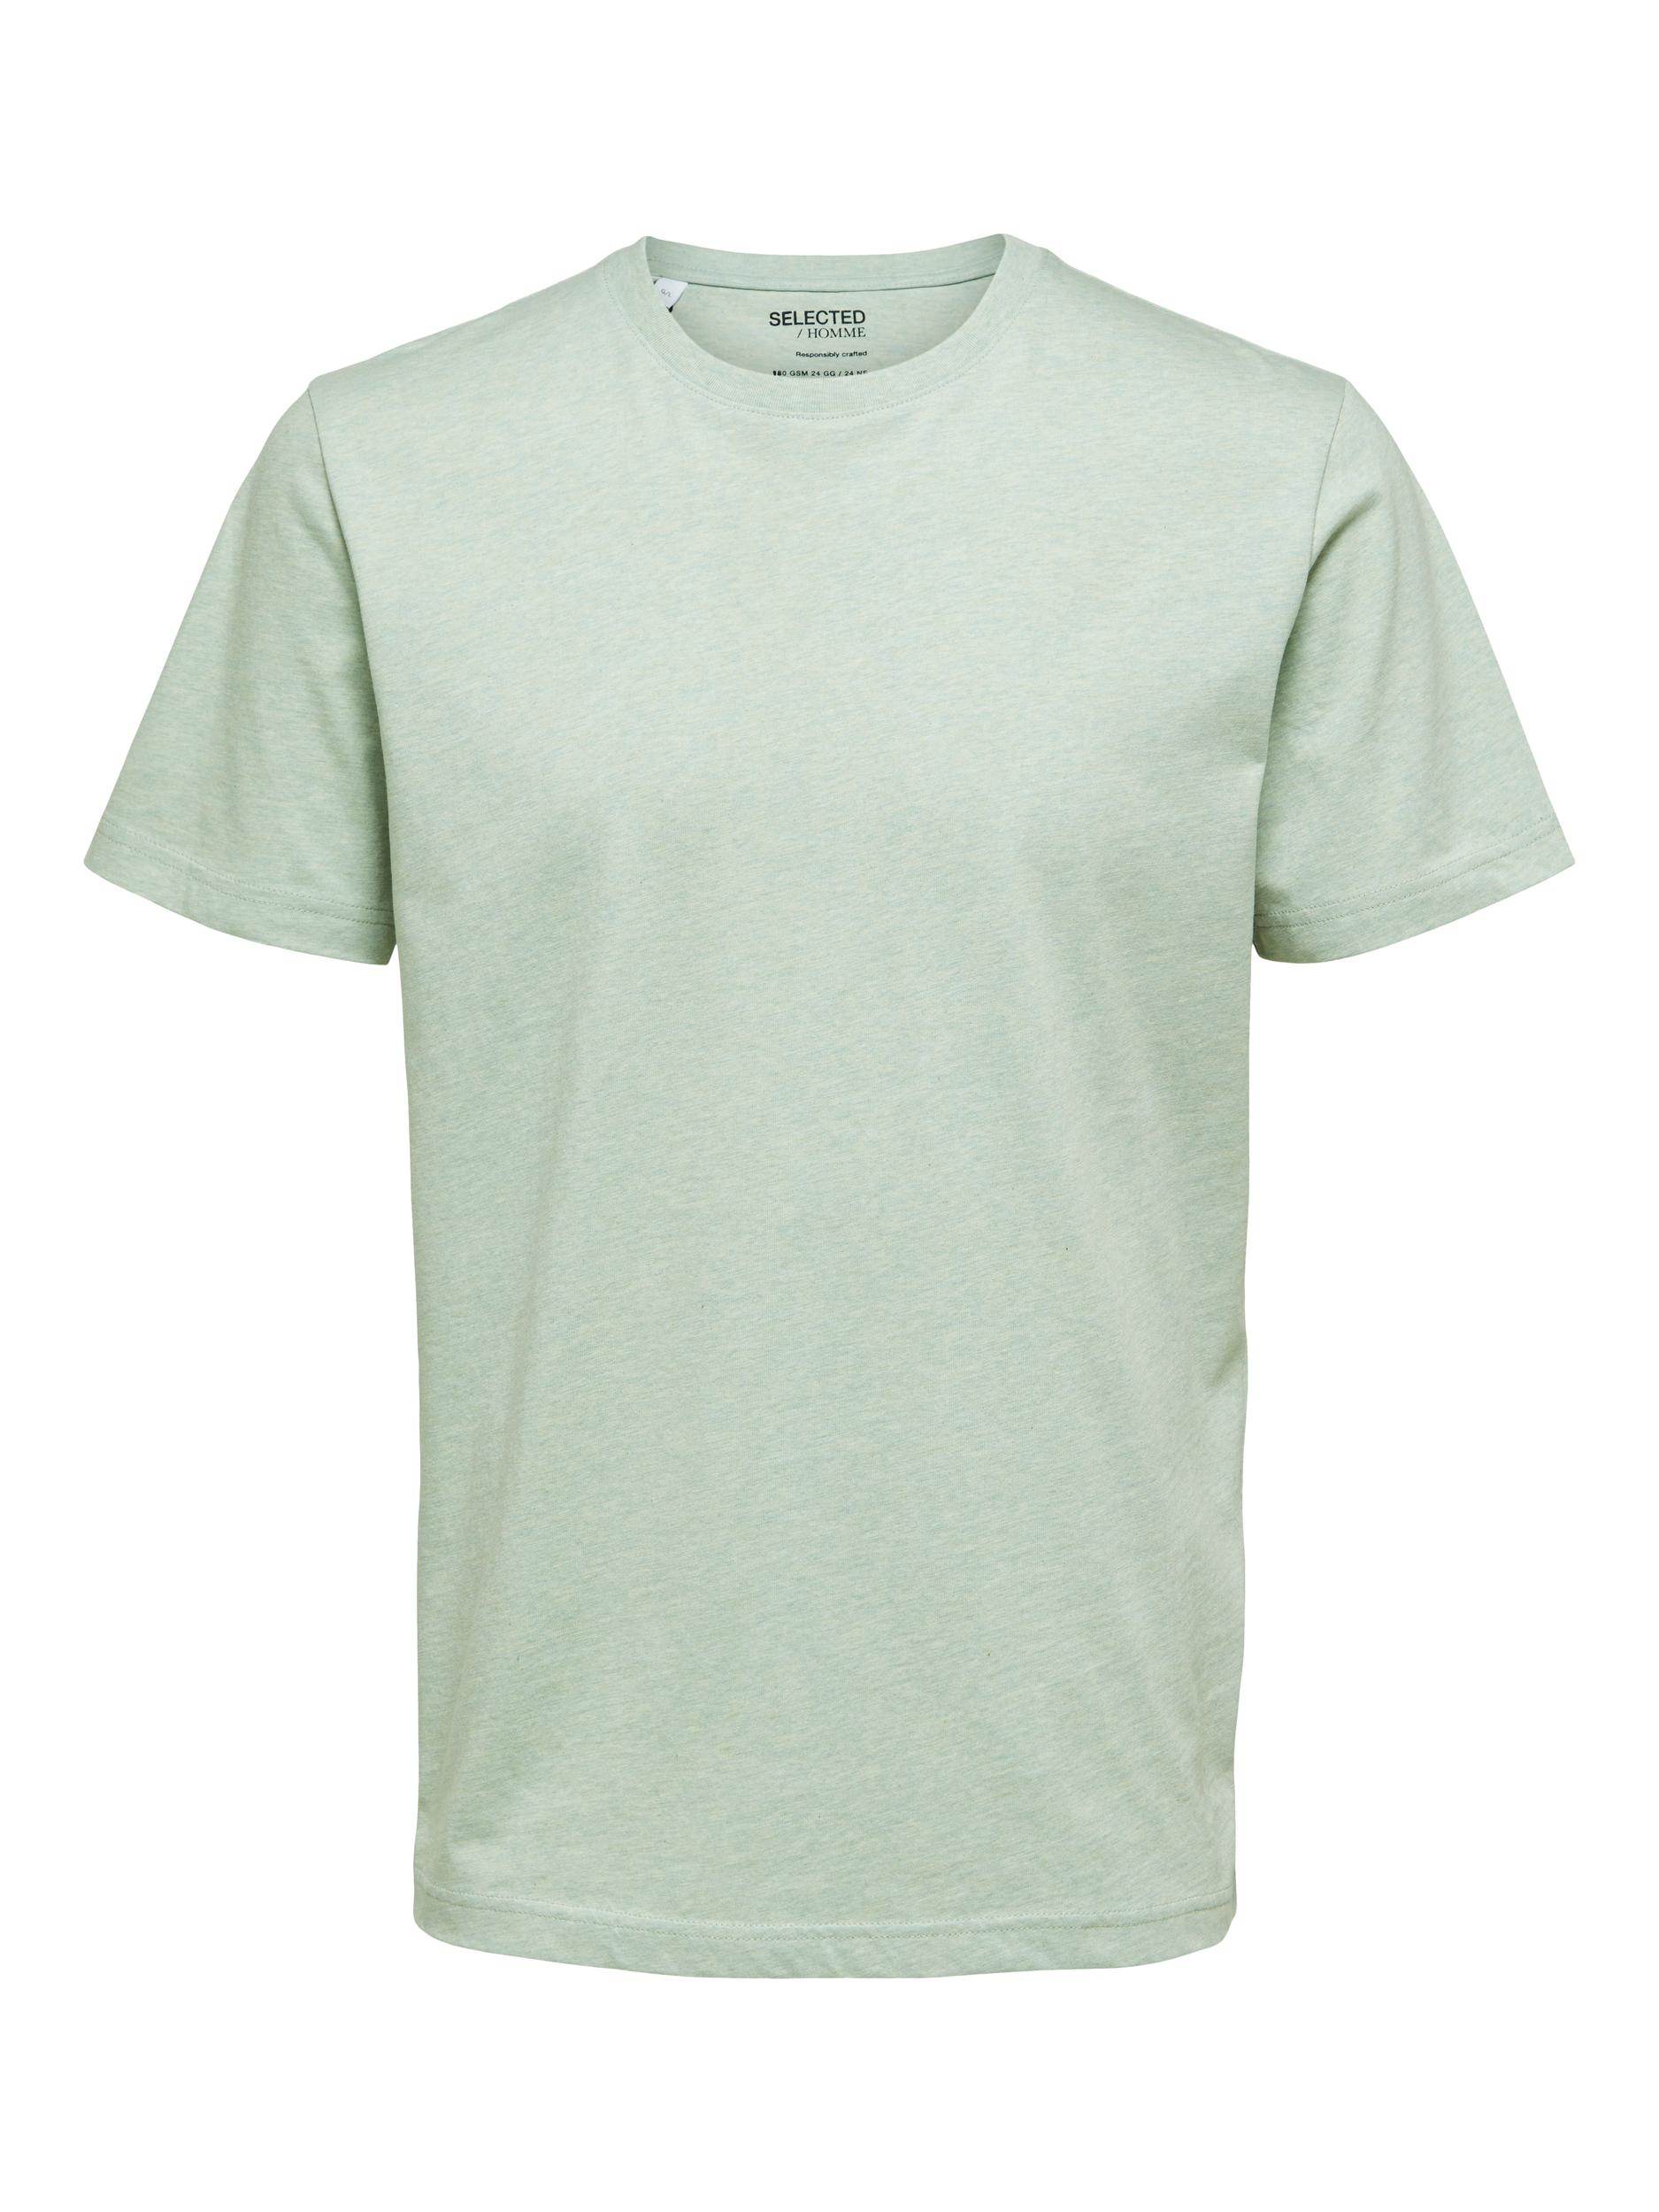  Norman T-shirt, Desert Sage, M